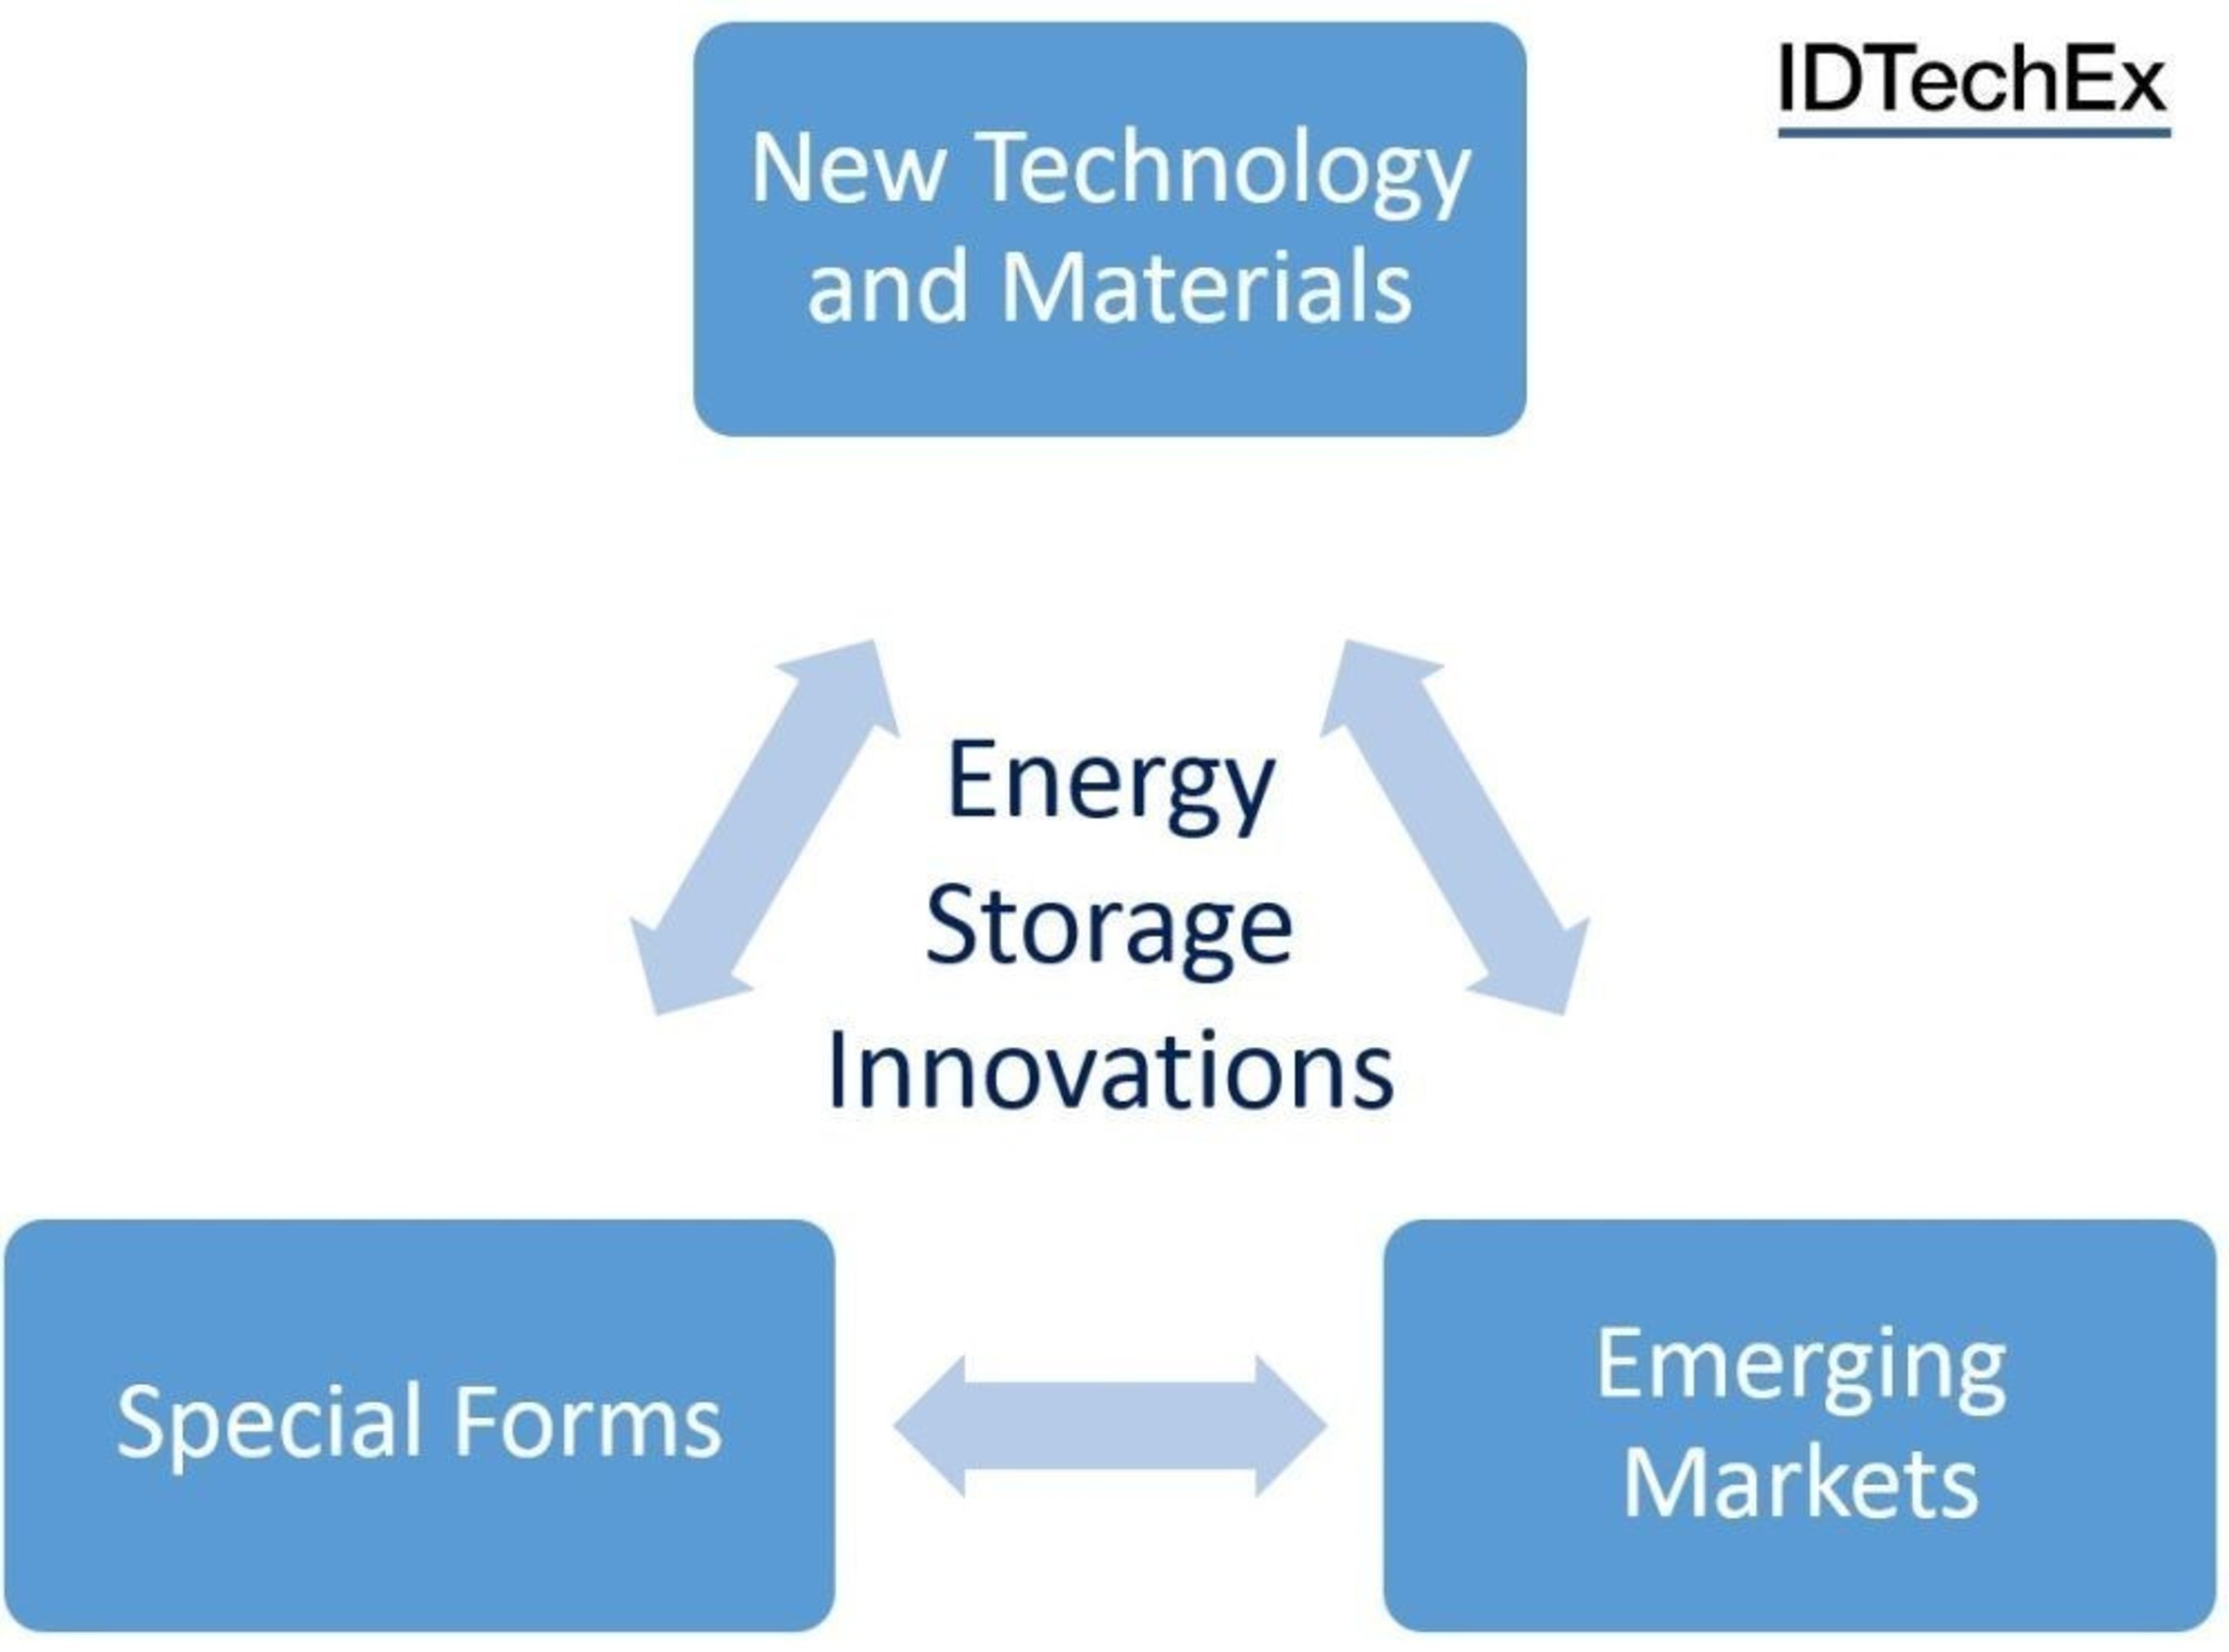 Energy Storage Innovations. Source: IDTechEx (www.IDTechEx.com) (PRNewsFoto/IDTechEx Show)